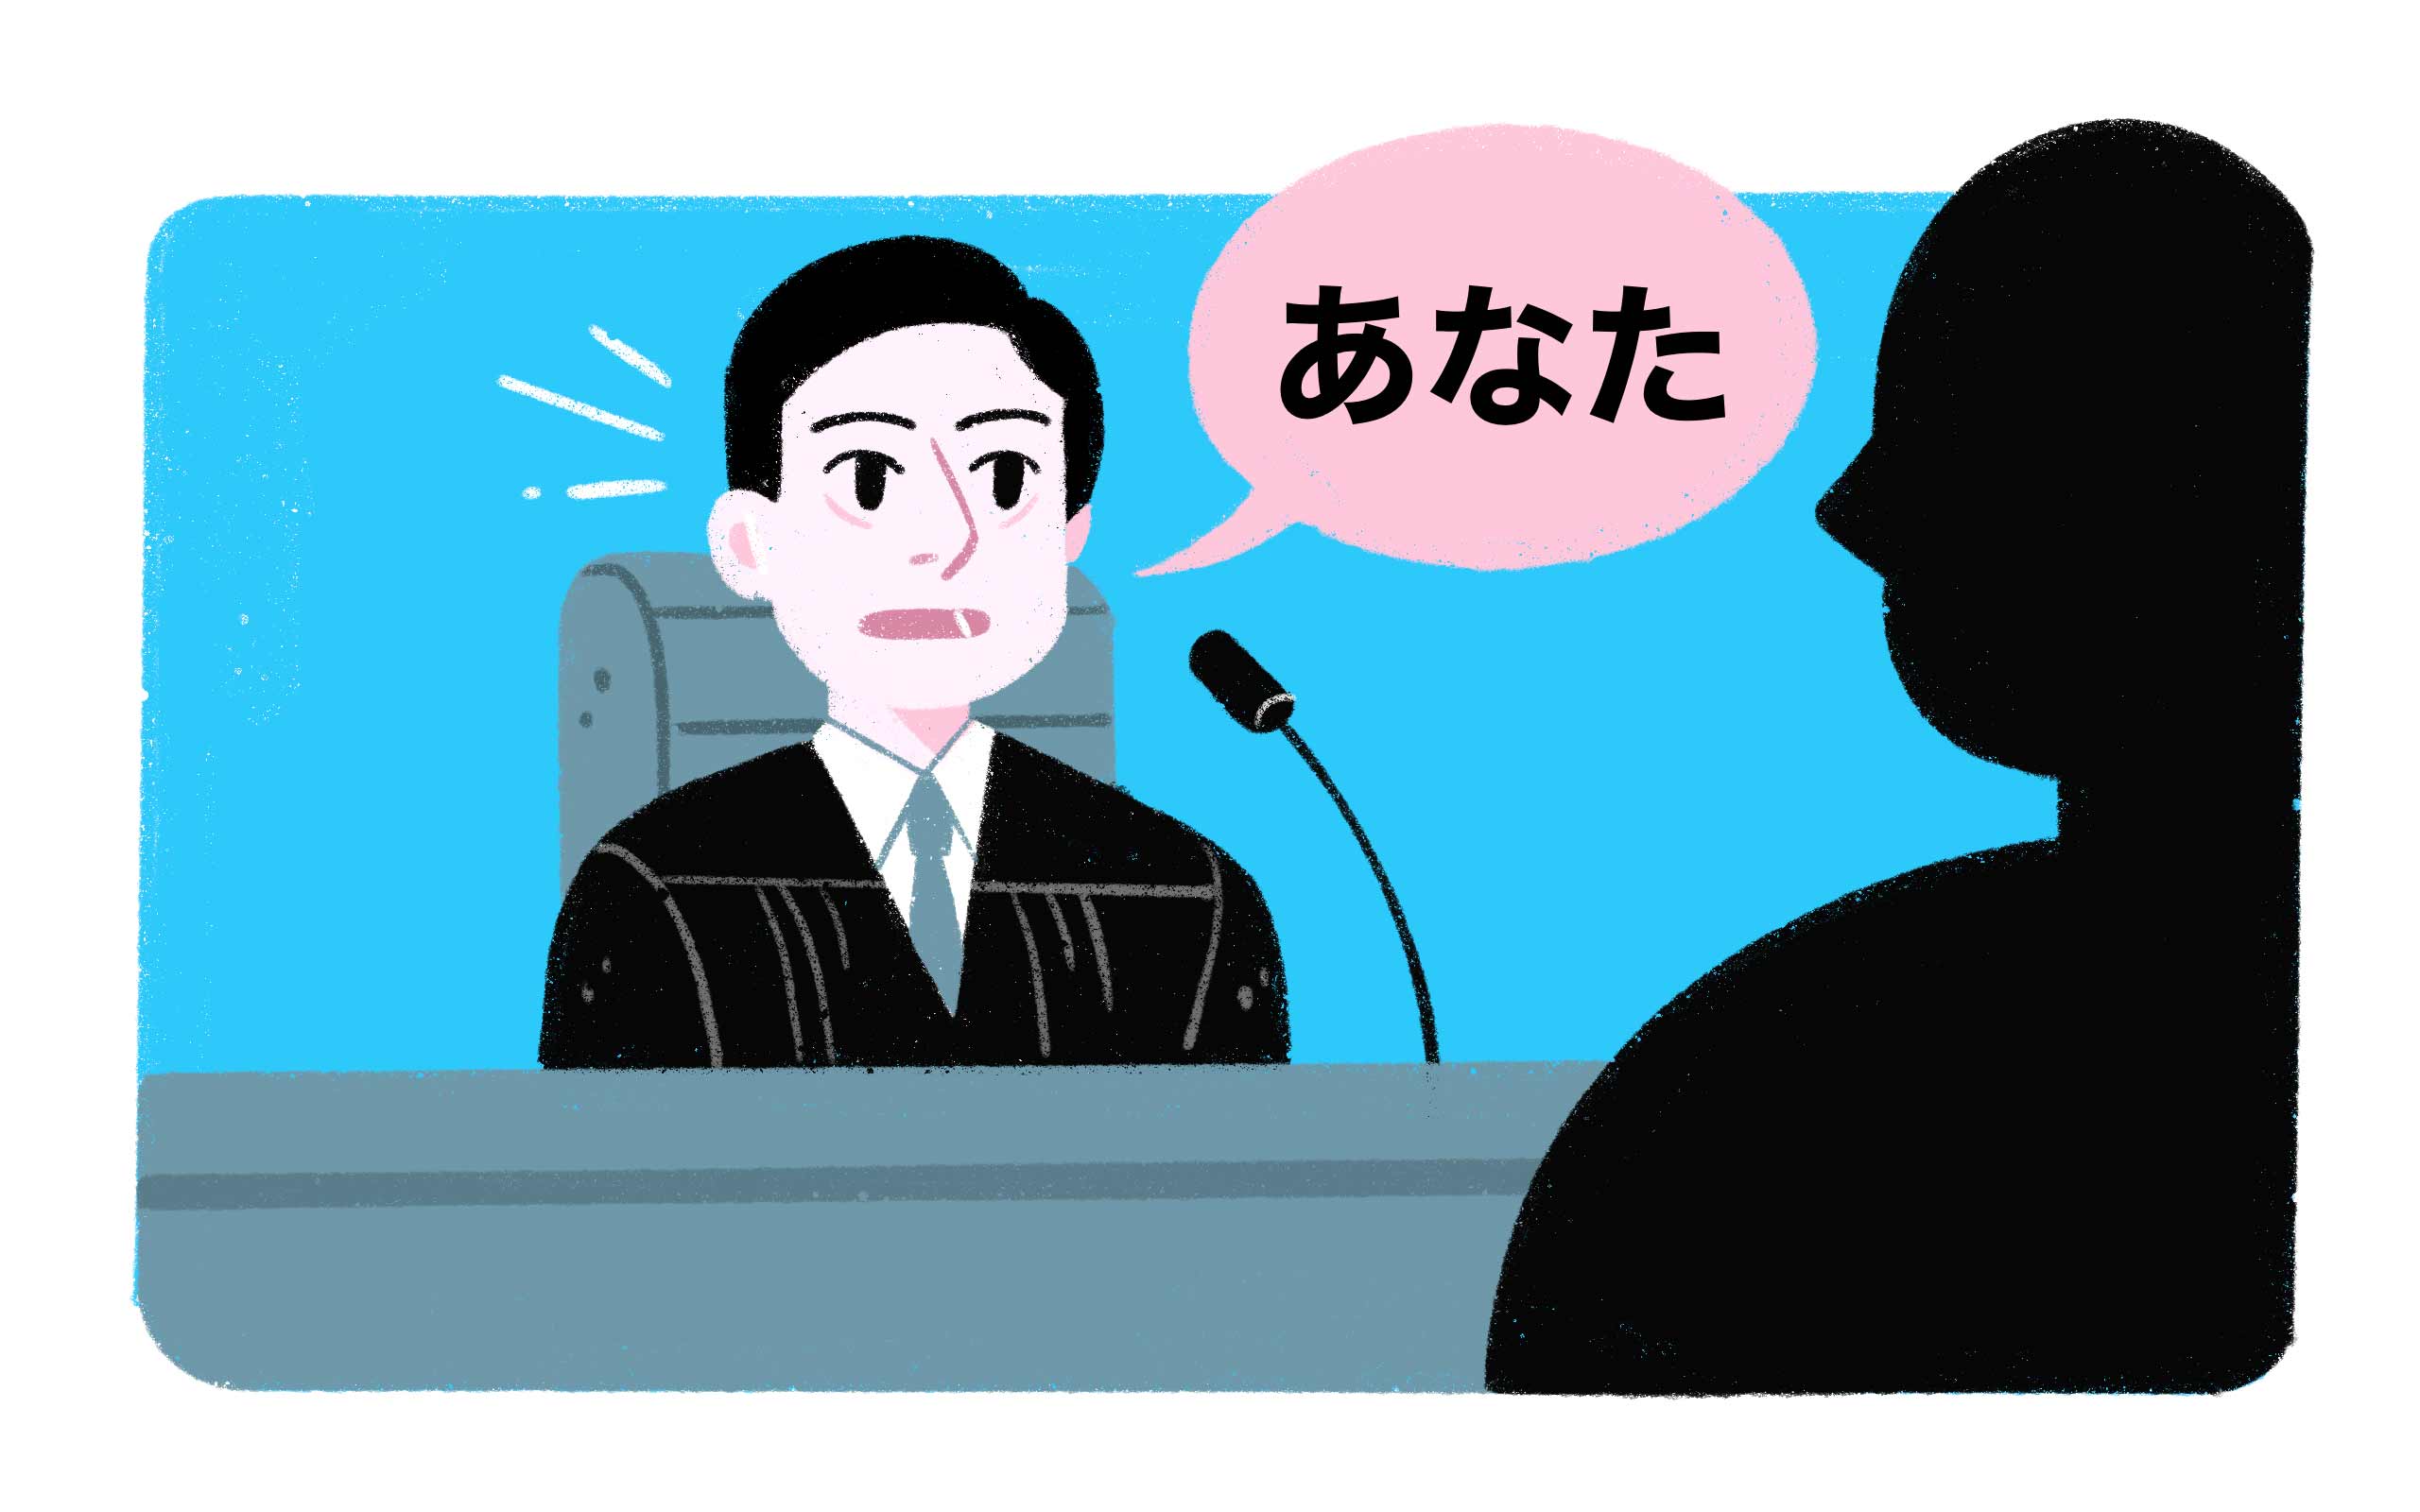 a judge saying あなた